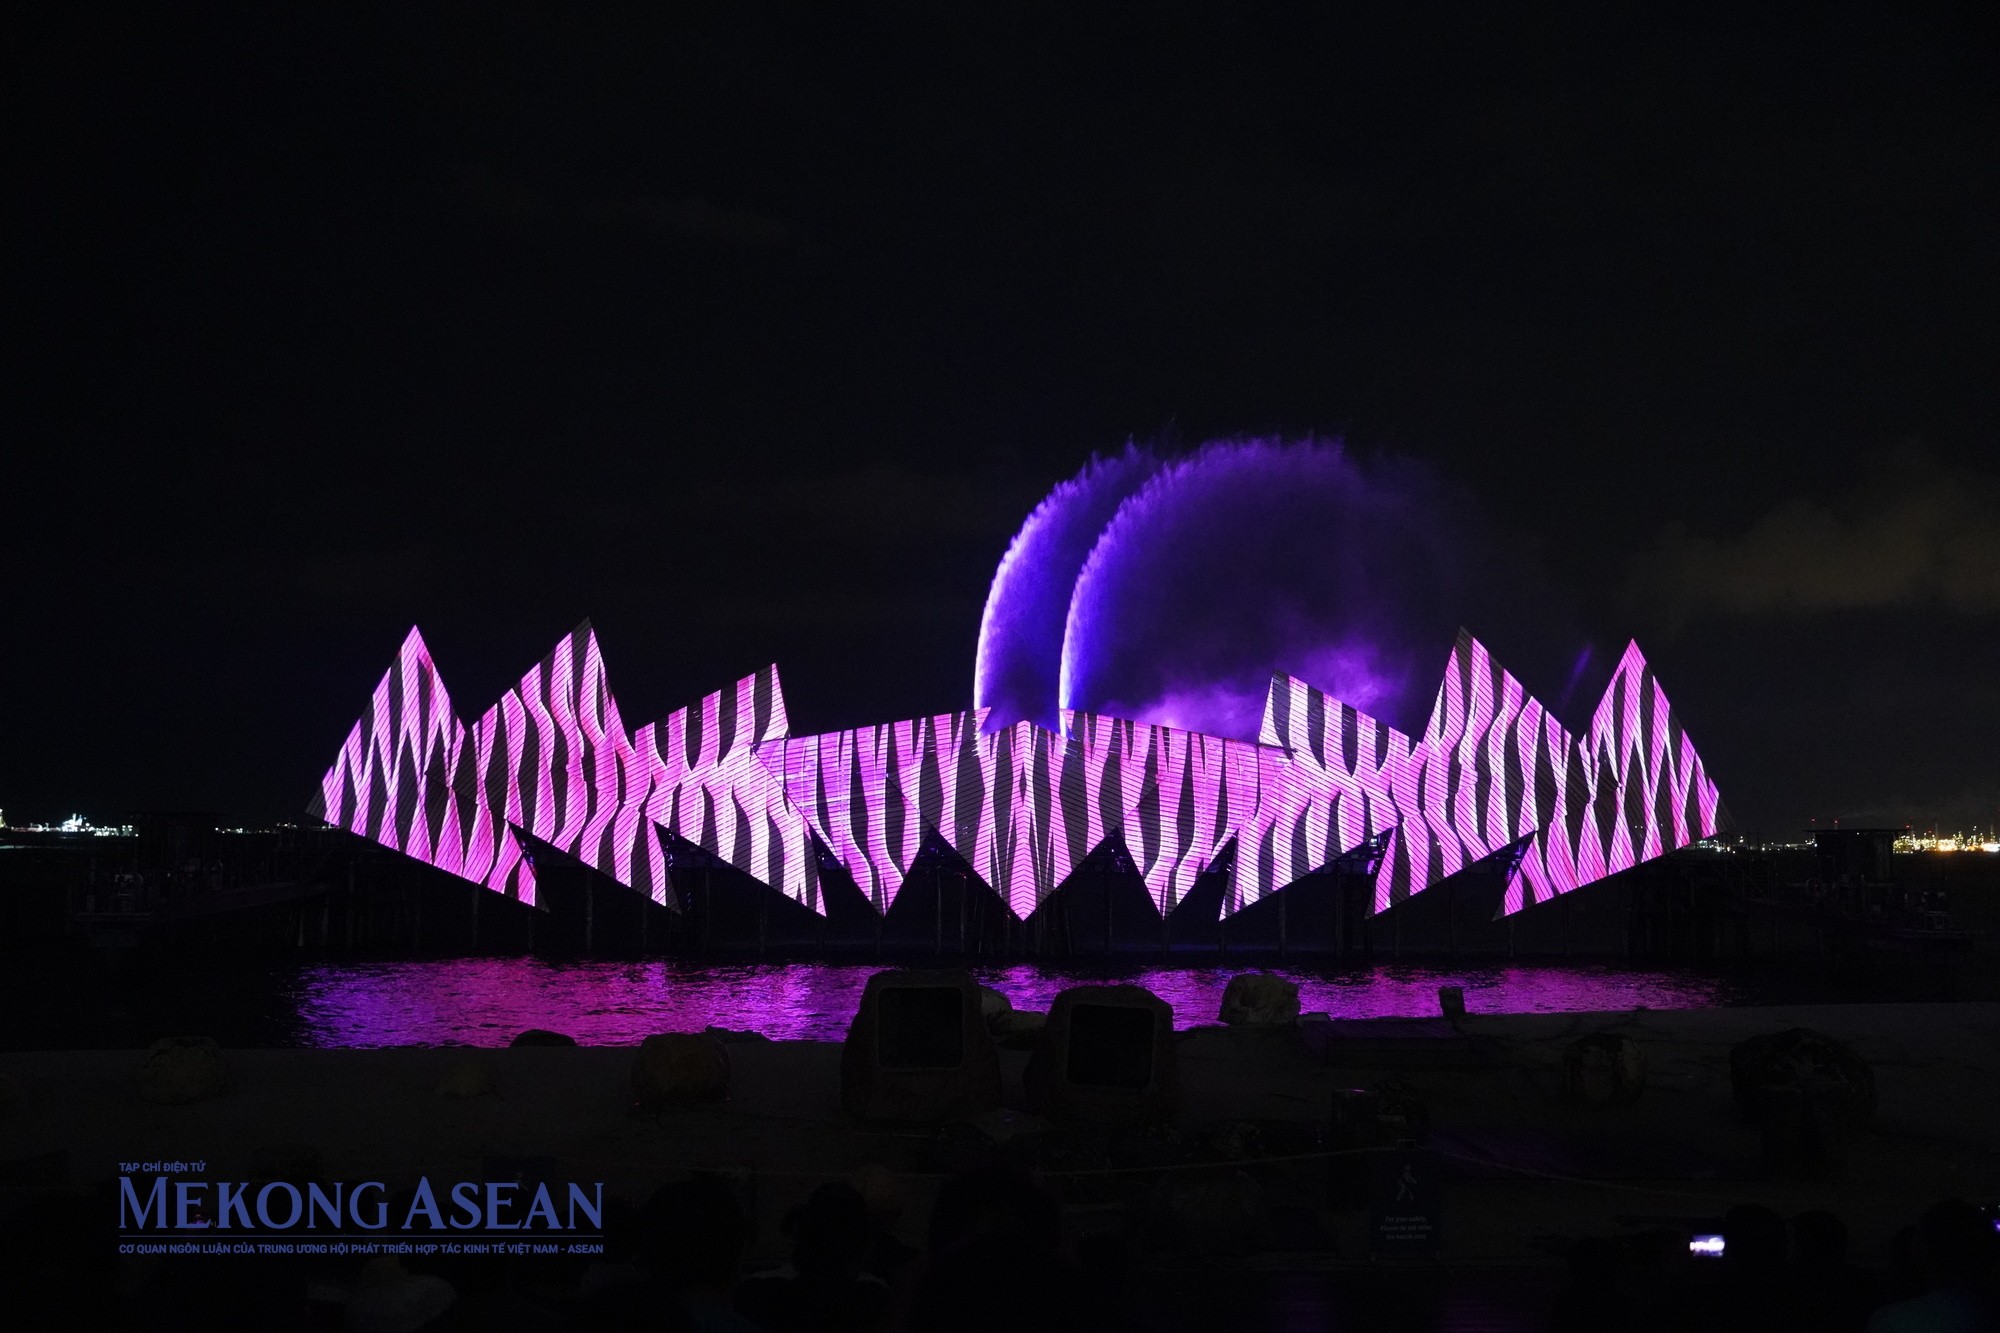 Chiêm ngưỡng show nhạc nước nổi tiếng nhất Singapore